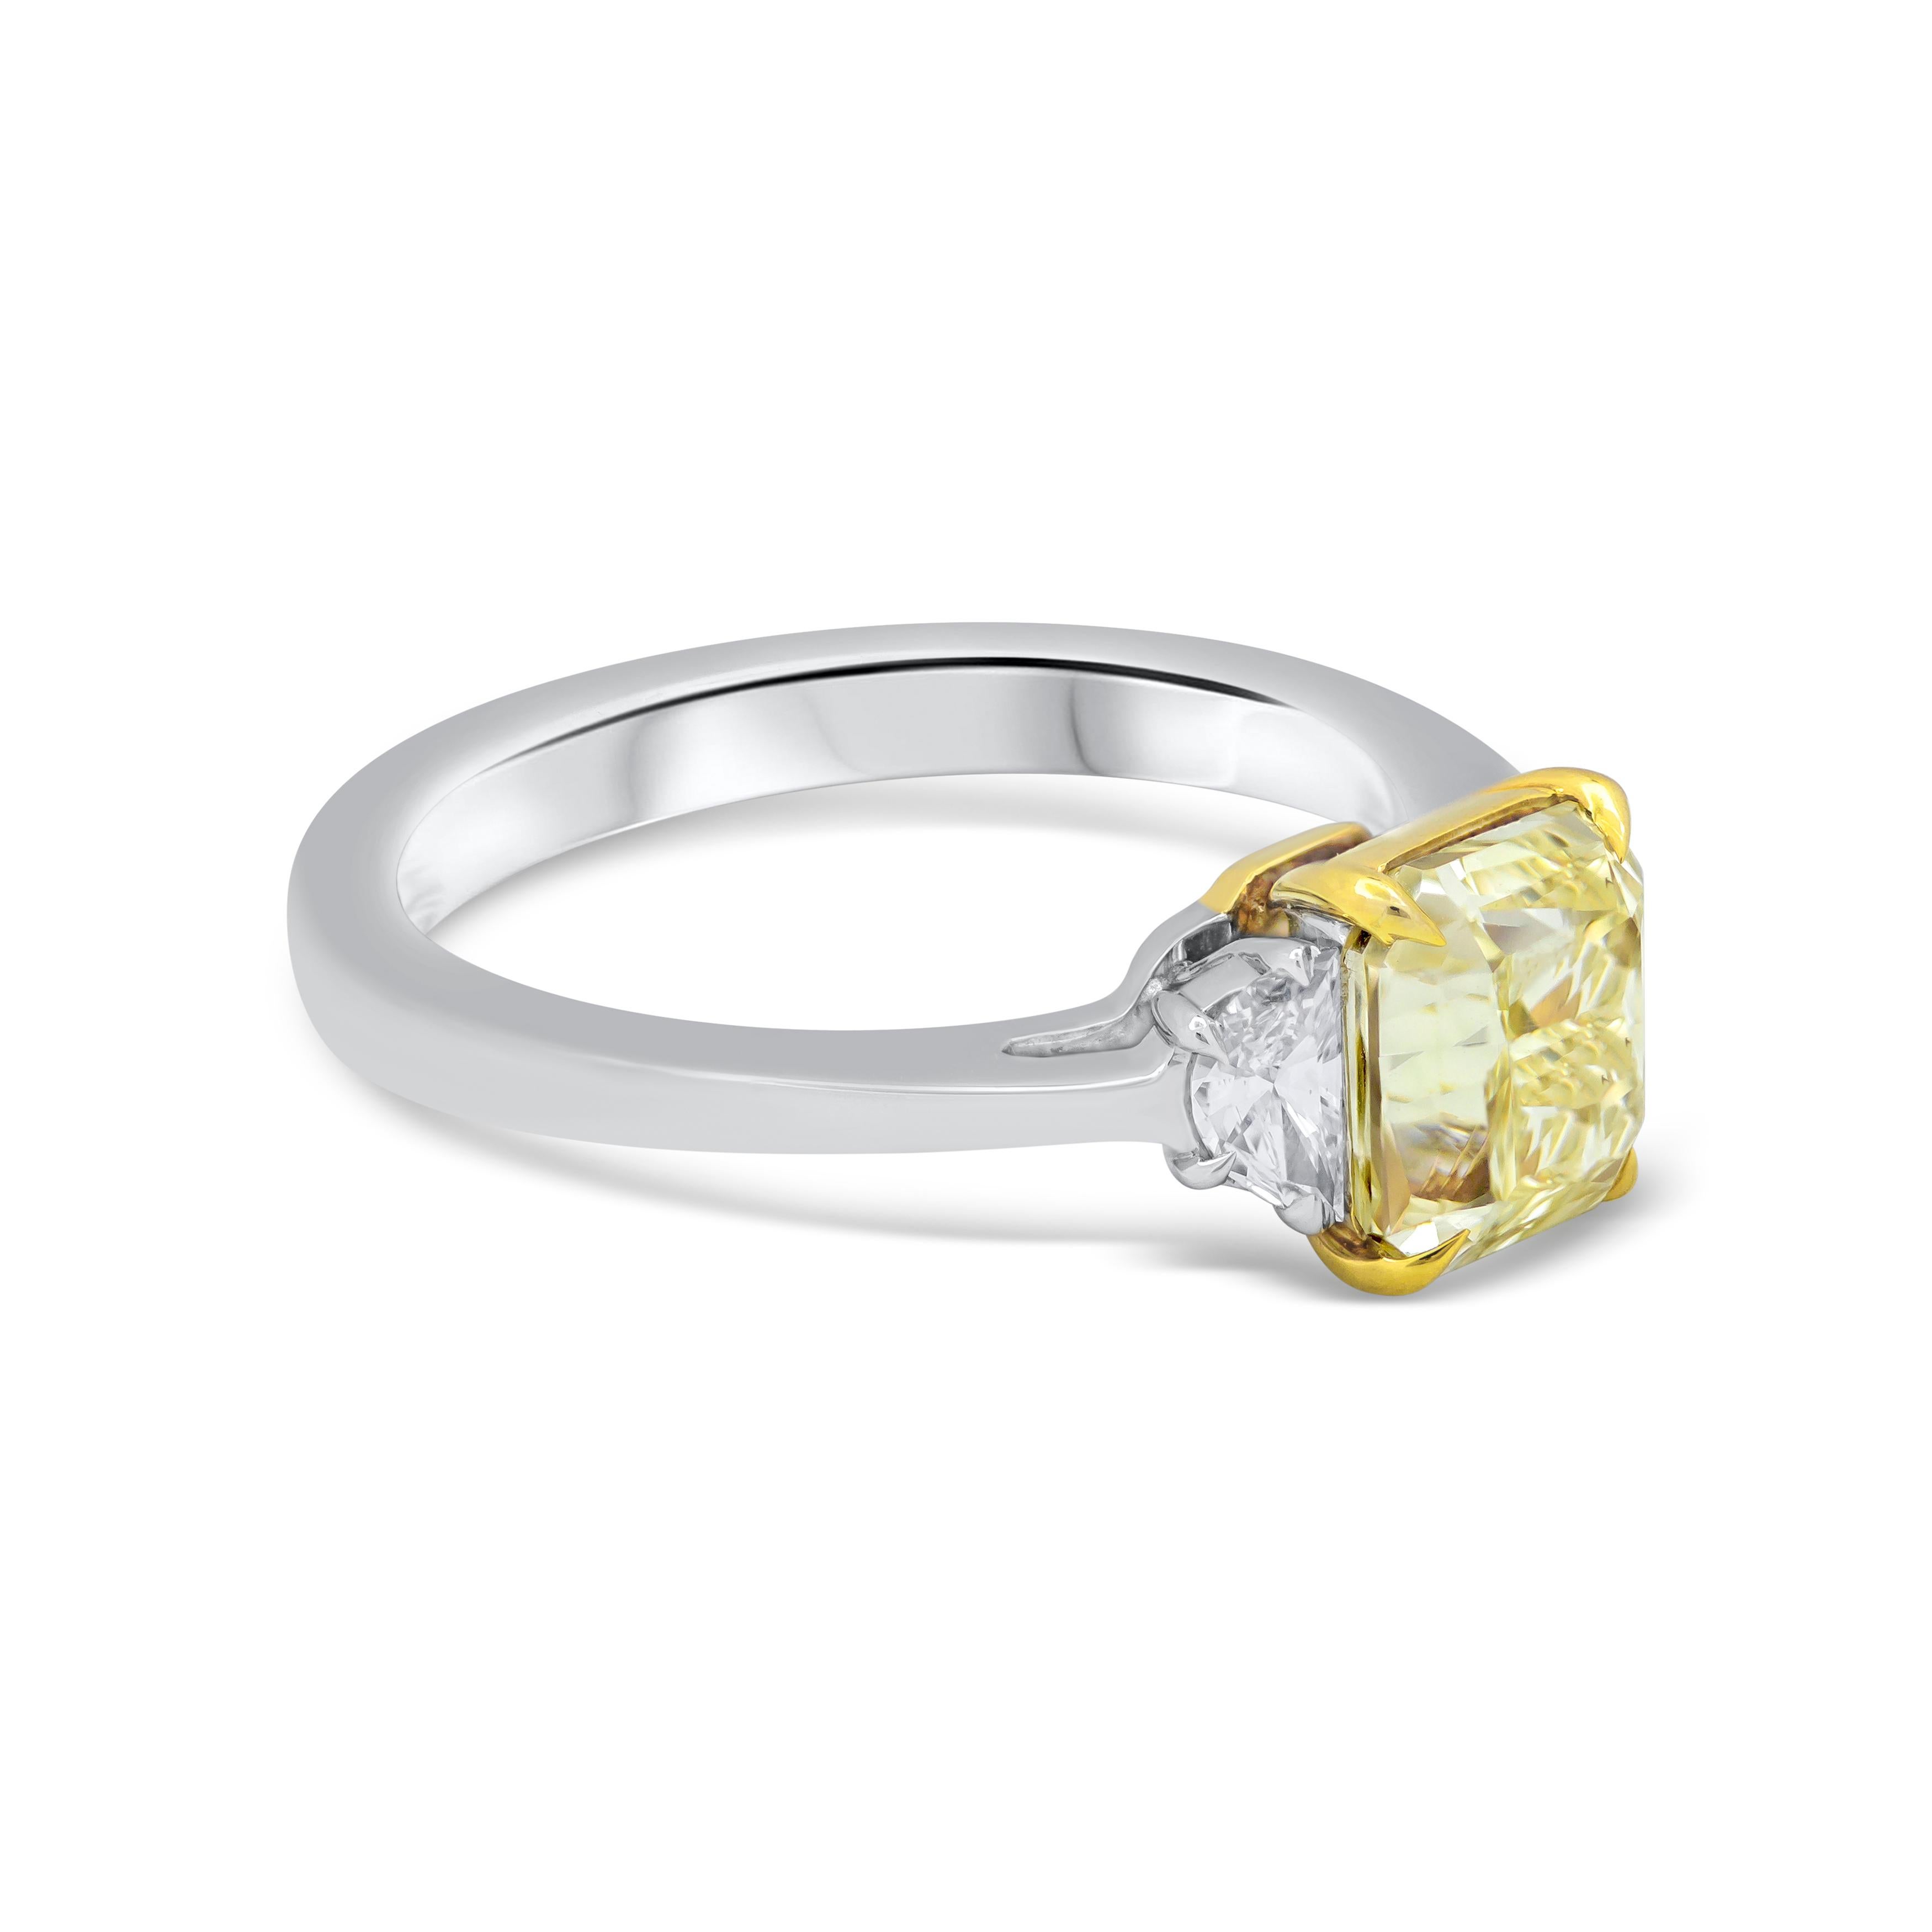 Eine einfache und schicke Verlobungsring verfügt über einen 2,02 Karat strahlend geschnittenen Diamanten, dass GIA zertifiziert als Fancy Yellow Farbe, VS2 in Klarheit, in einem 18k Gelbgold vier Zacken Korb Einstellung. Elegant flankiert von